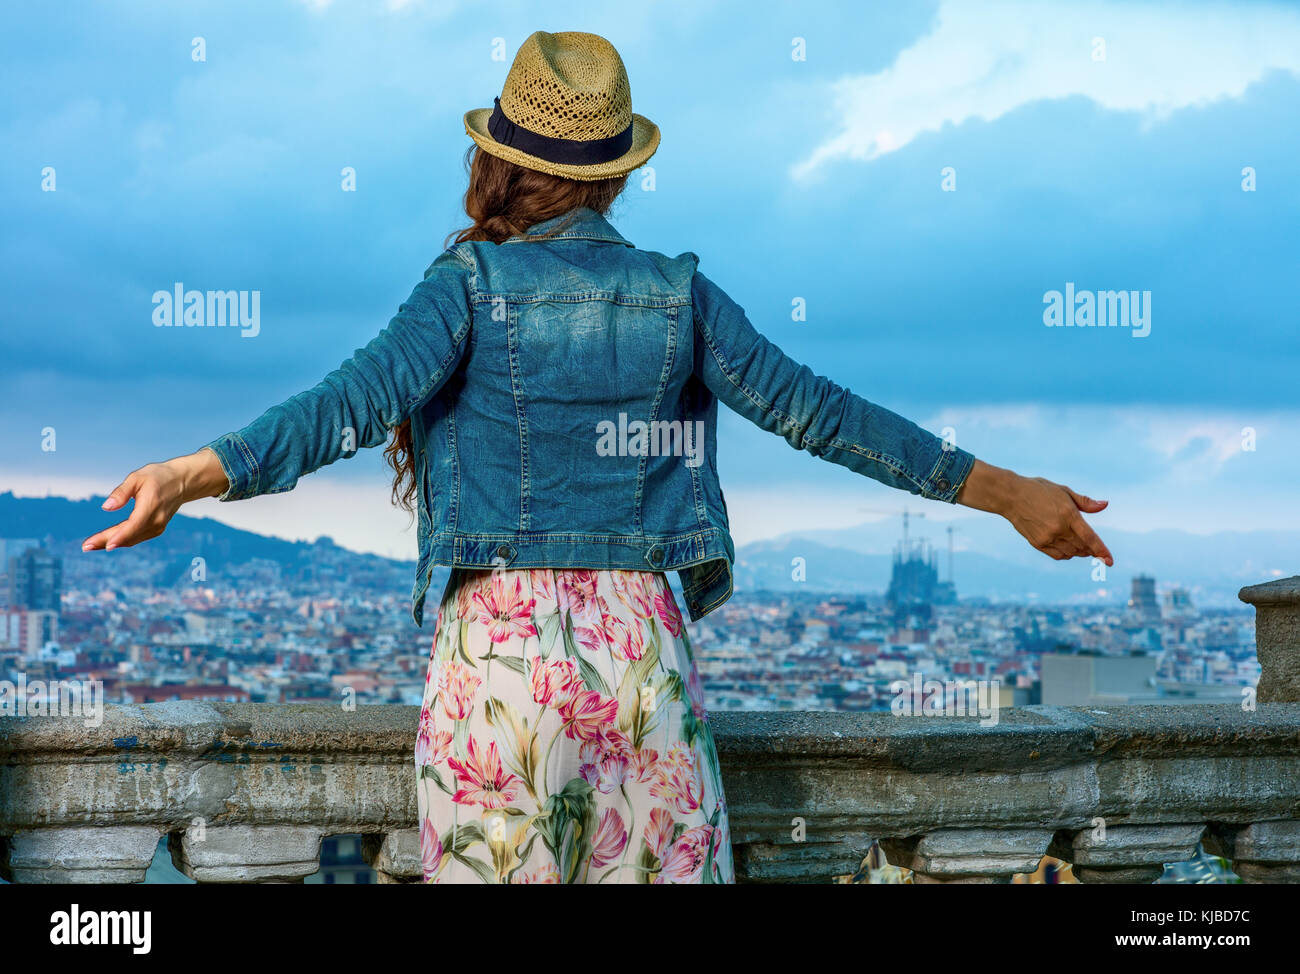 Soirée parfaite avec vue magnifique. vu de dos trendy femme en robe et  chapeau de paille dans l'avant du paysage urbain de Barcelone, Espagne  réjouissance Photo Stock - Alamy